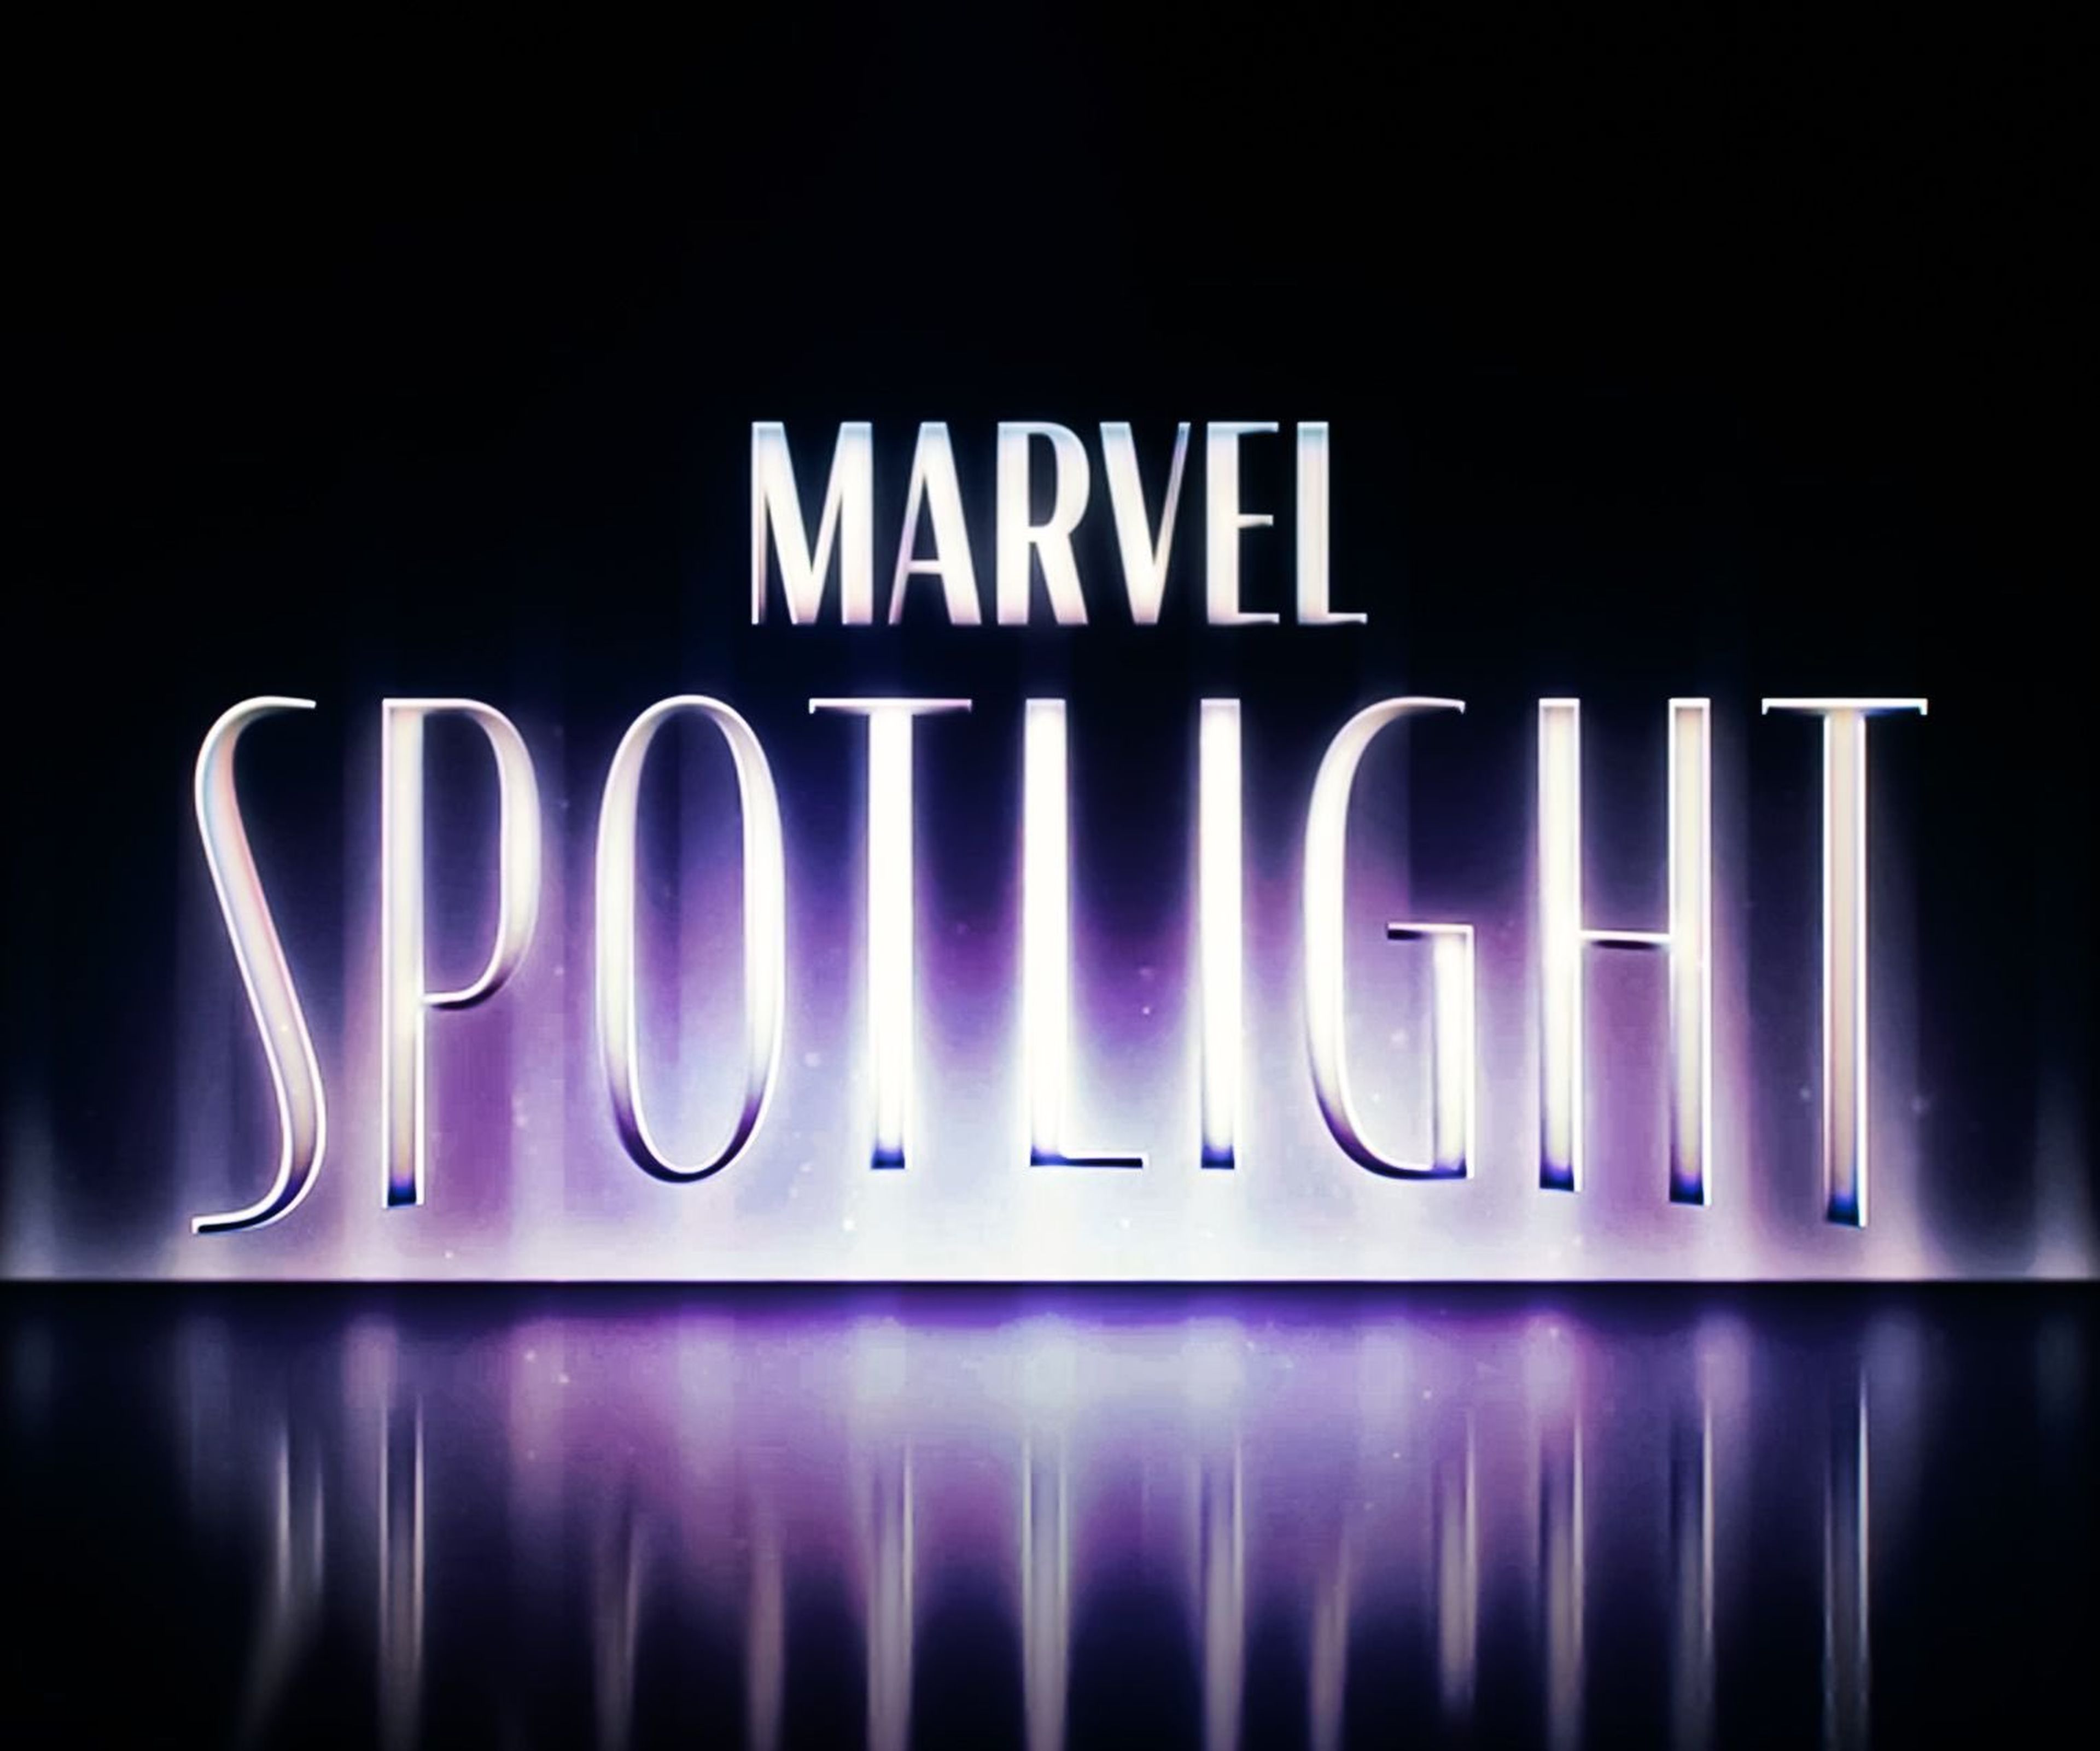 Marvel Spotlight